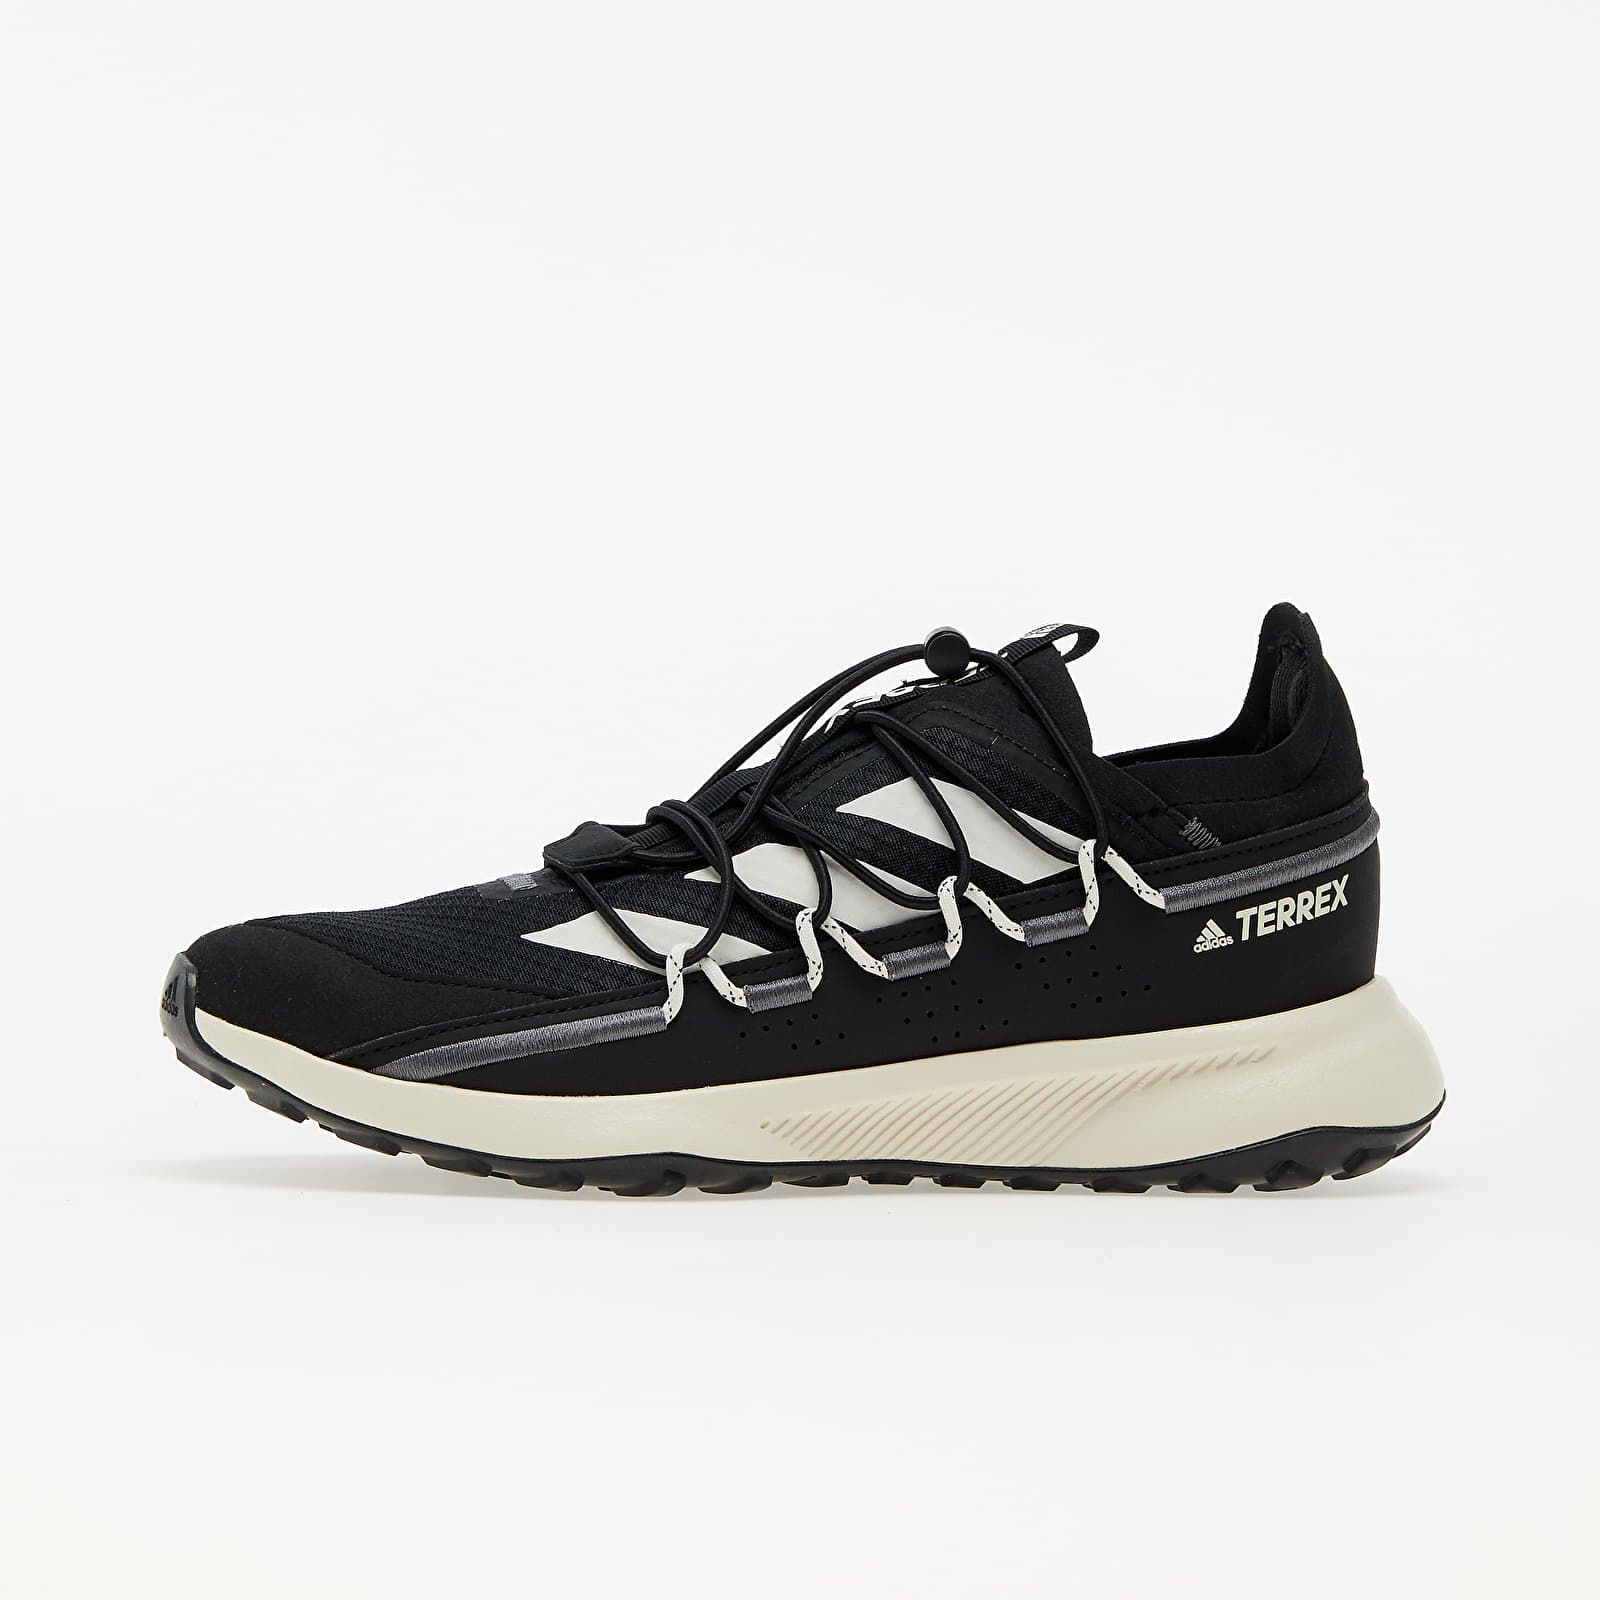 Women's shoes adidas Terrex Voyager 21 W Core Black/ Chalk White/ Grey Five